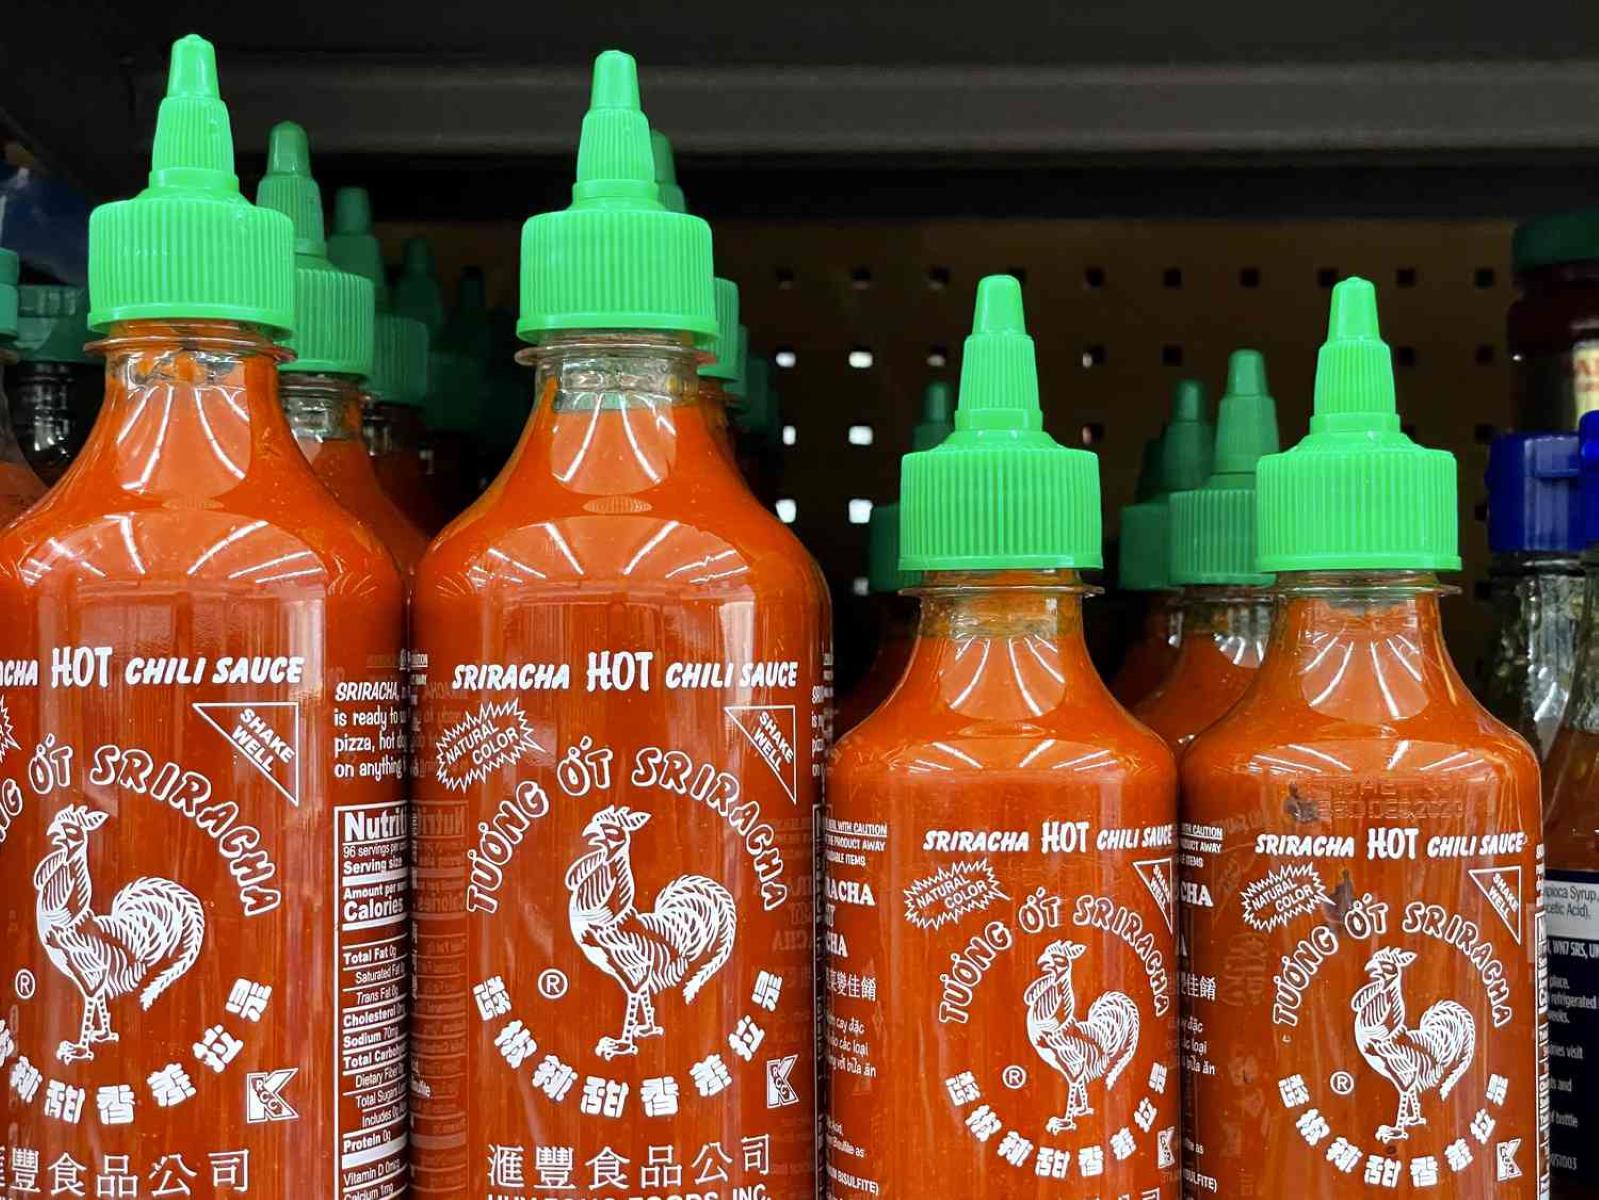 How To Store Sriracha